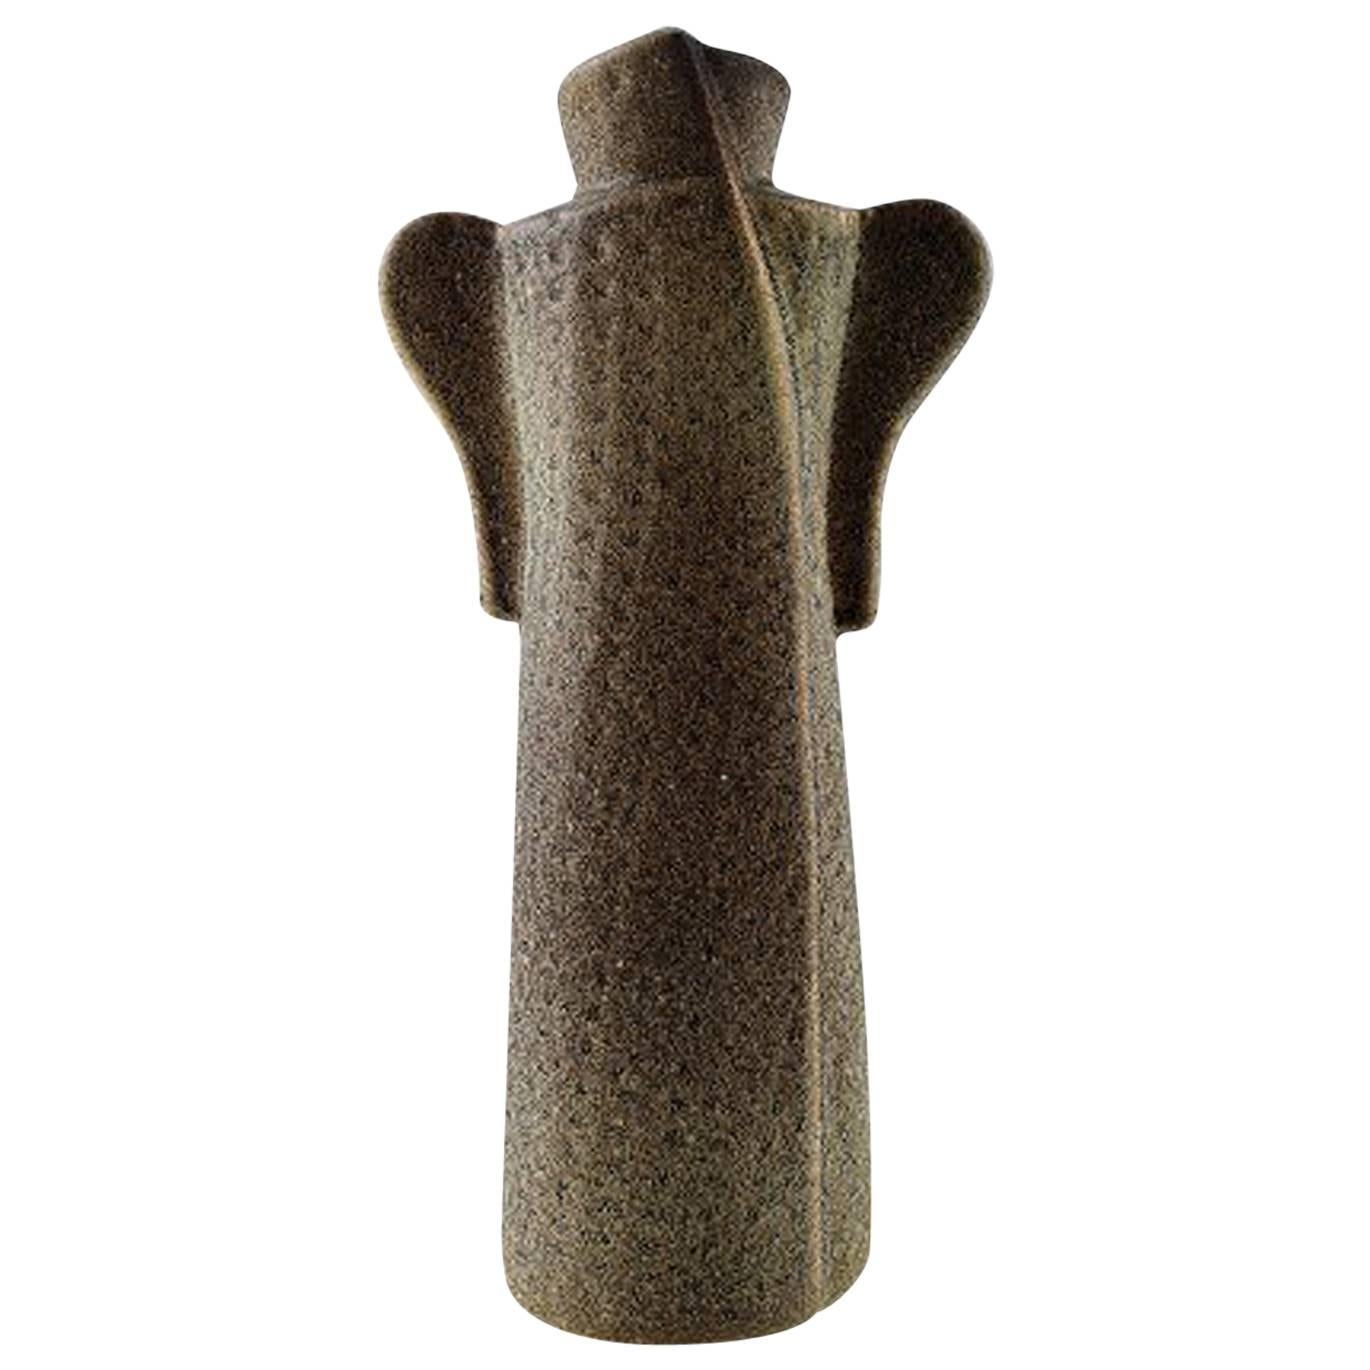 Lisa Larson für Gustavsberg Vase in Form eines Kleides, Steingut